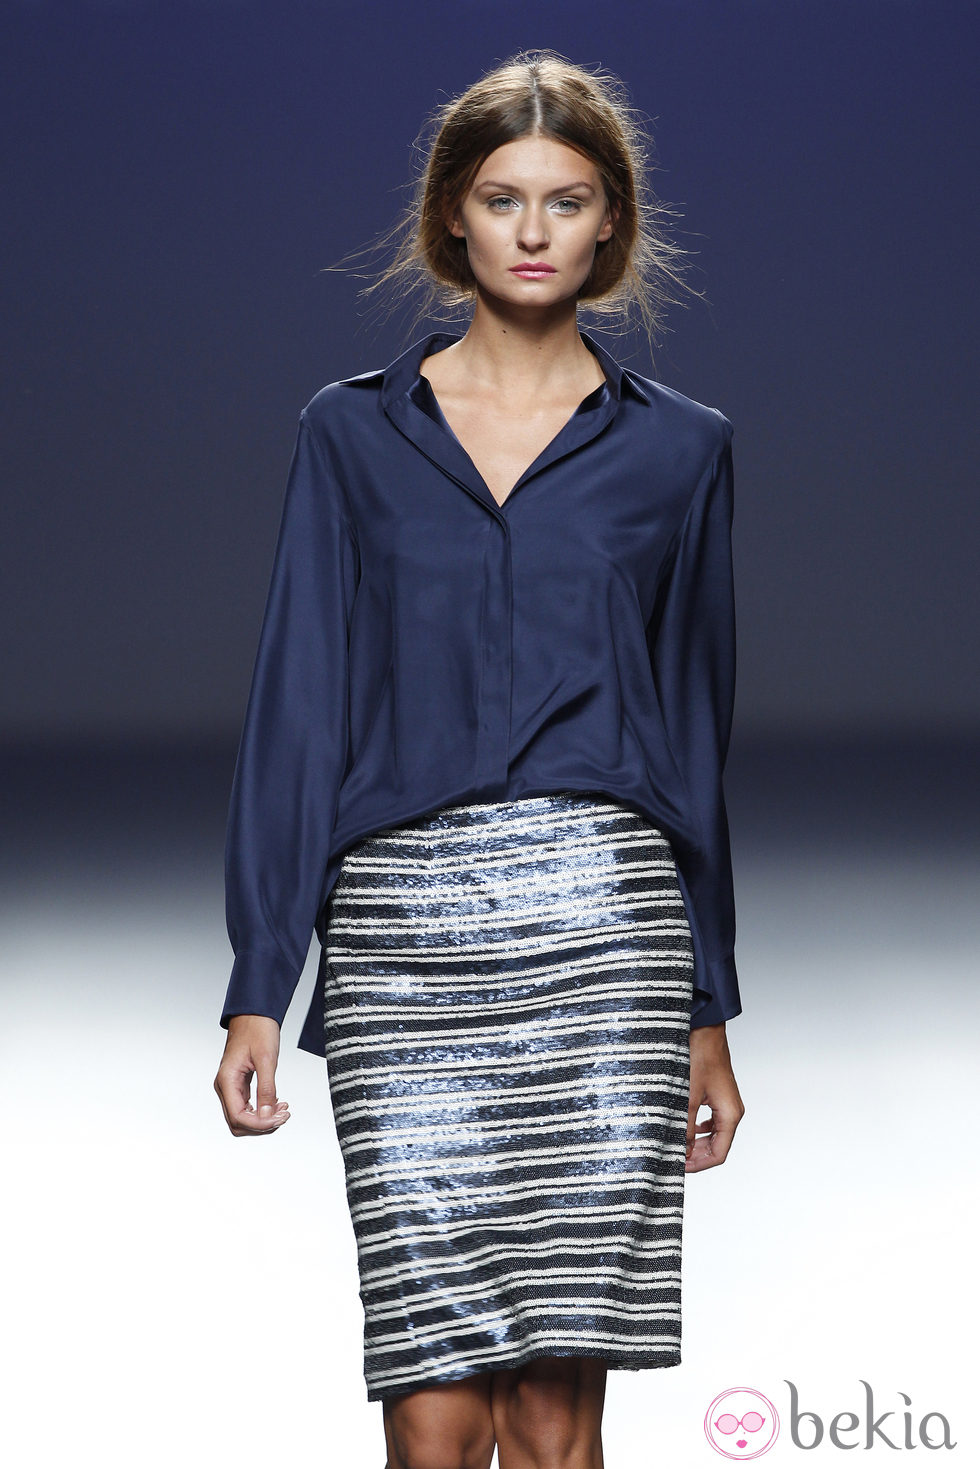 Falda a rayas de la colección primavera/verano 2014 de Diego Estrada en el EGO Madrid Fashion Week